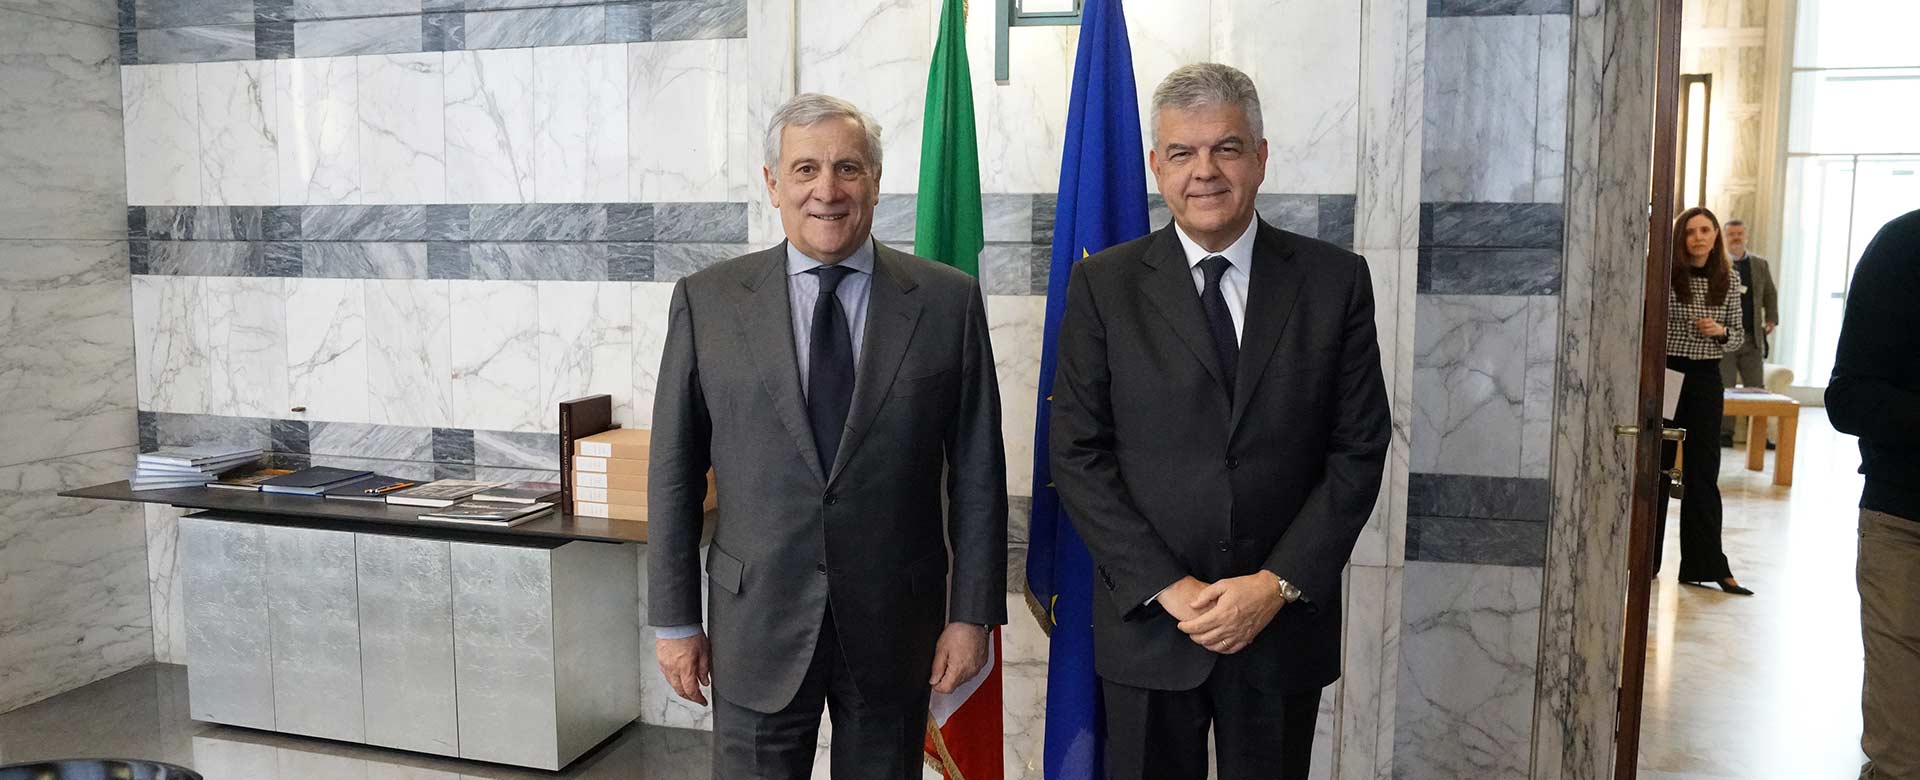 L'AD del Gruppo FS Luigi Ferraris insieme al Ministro Tajani